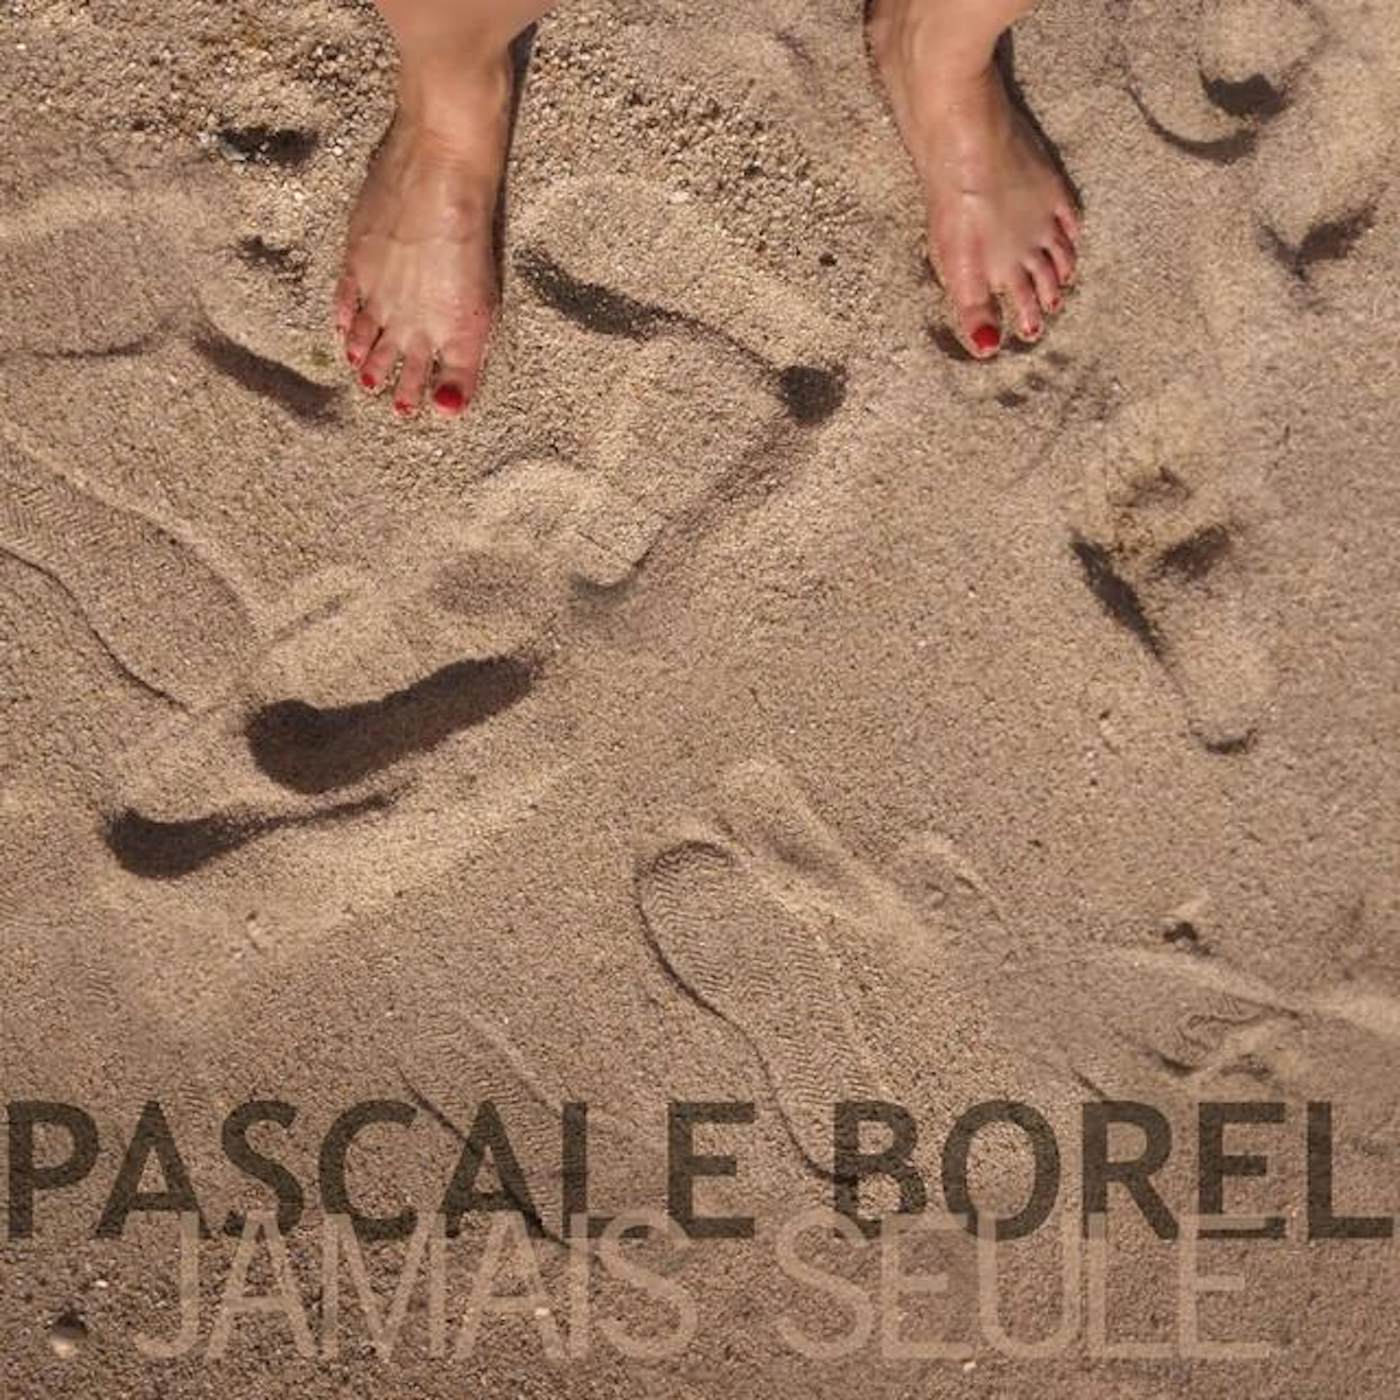 Pascale Borel